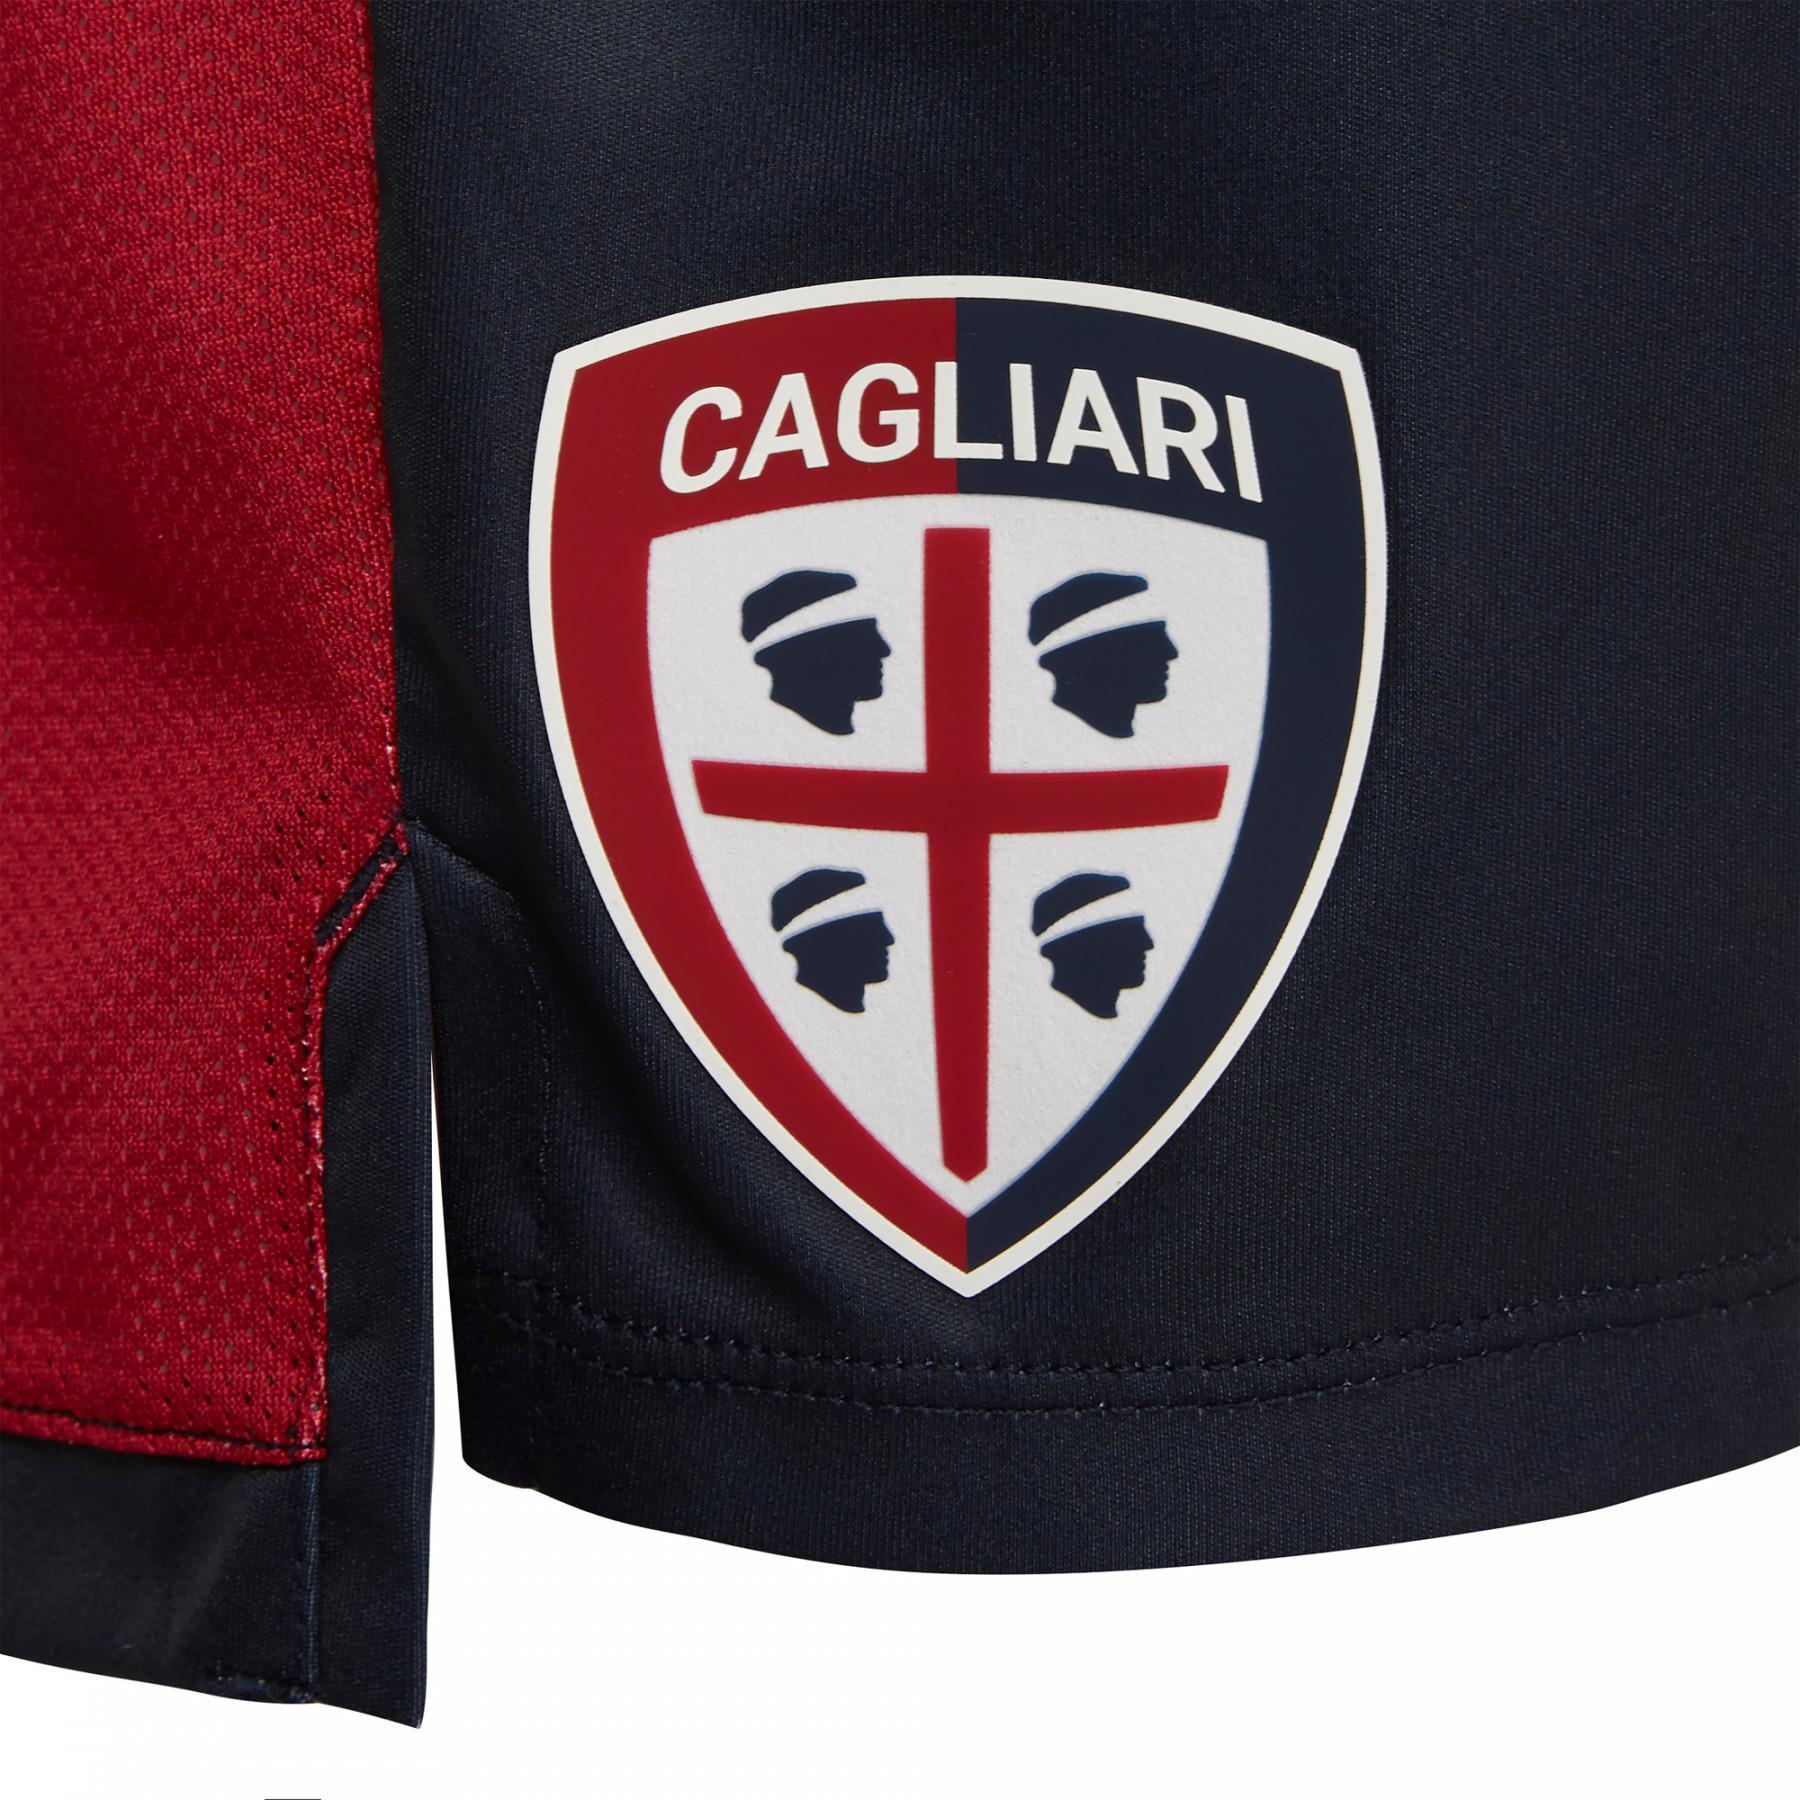 Calções caseiros Cagliari Calcio 19/20